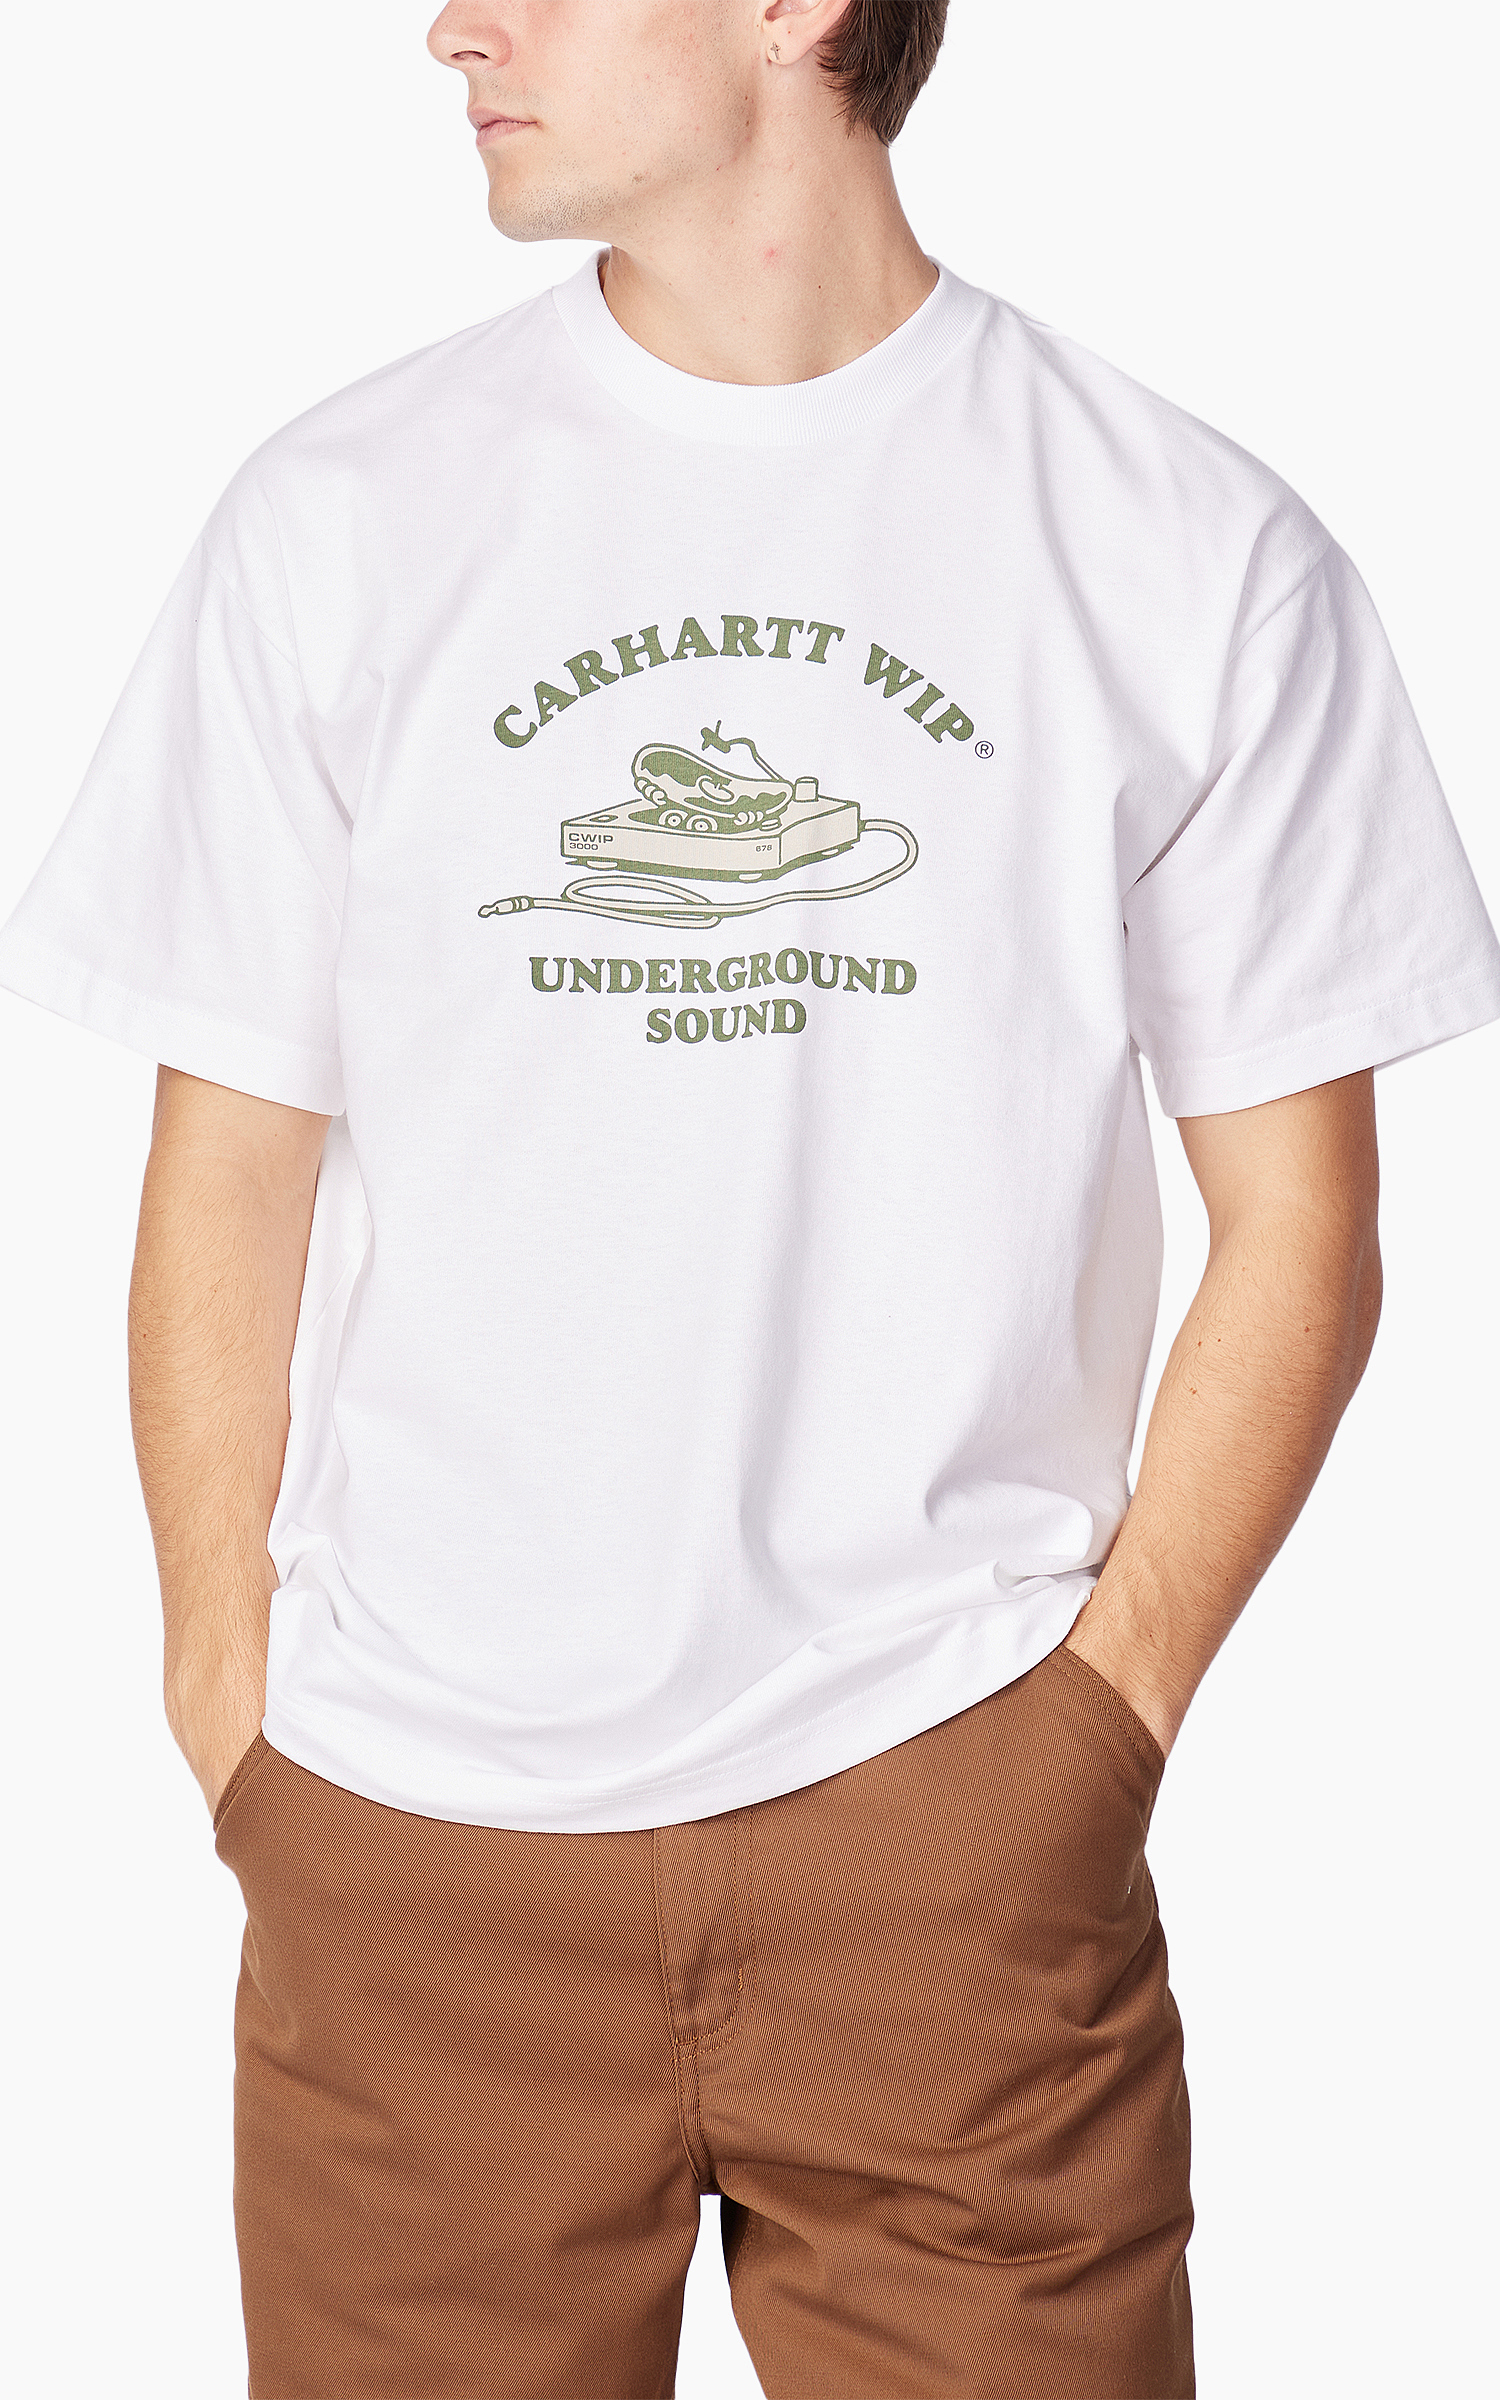 Carhartt WIP S/S Underground Sound T-Shirt White